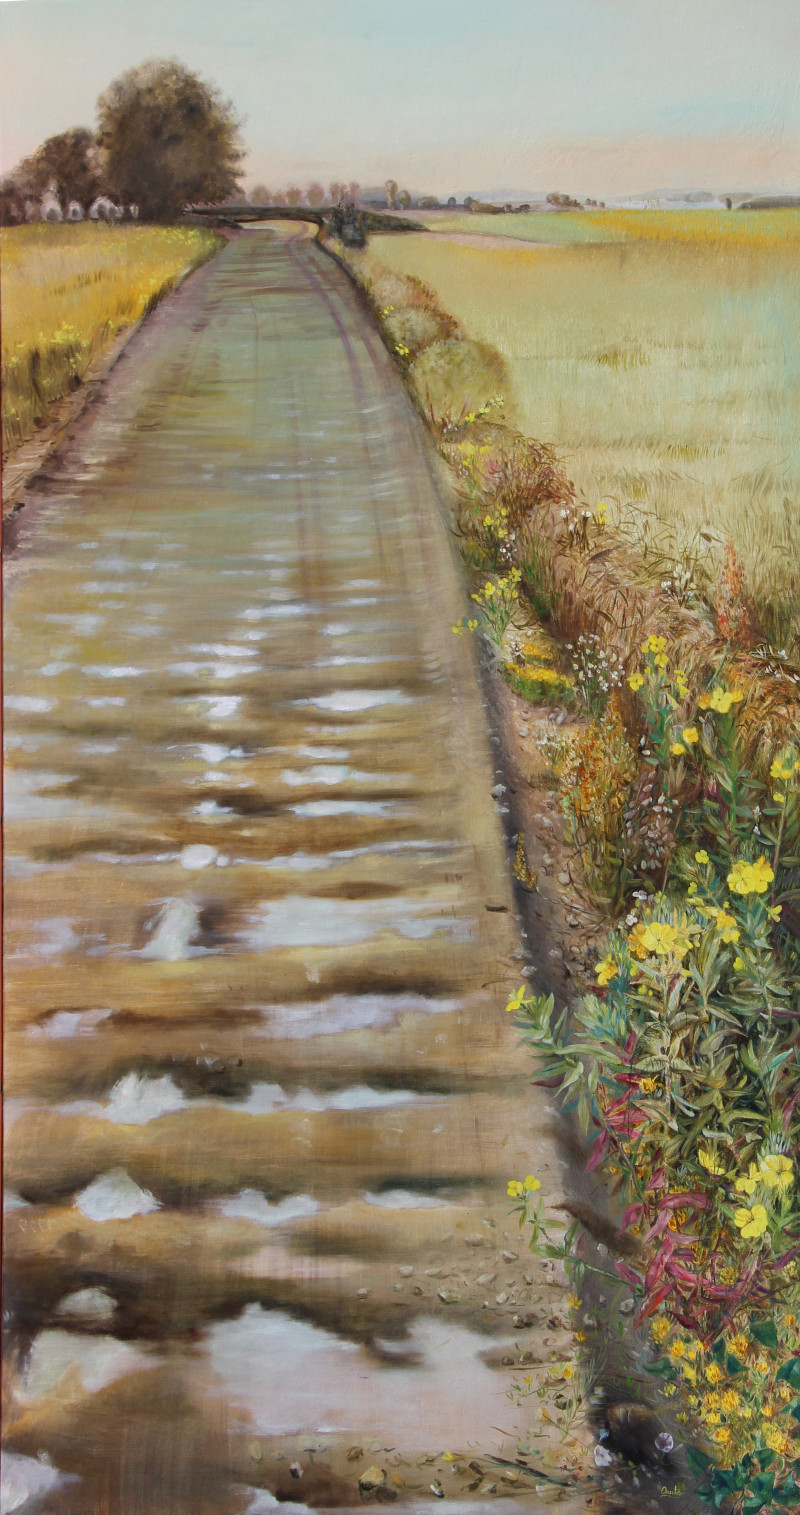 The Road original painting by Onutė Juškienė. Landscapes